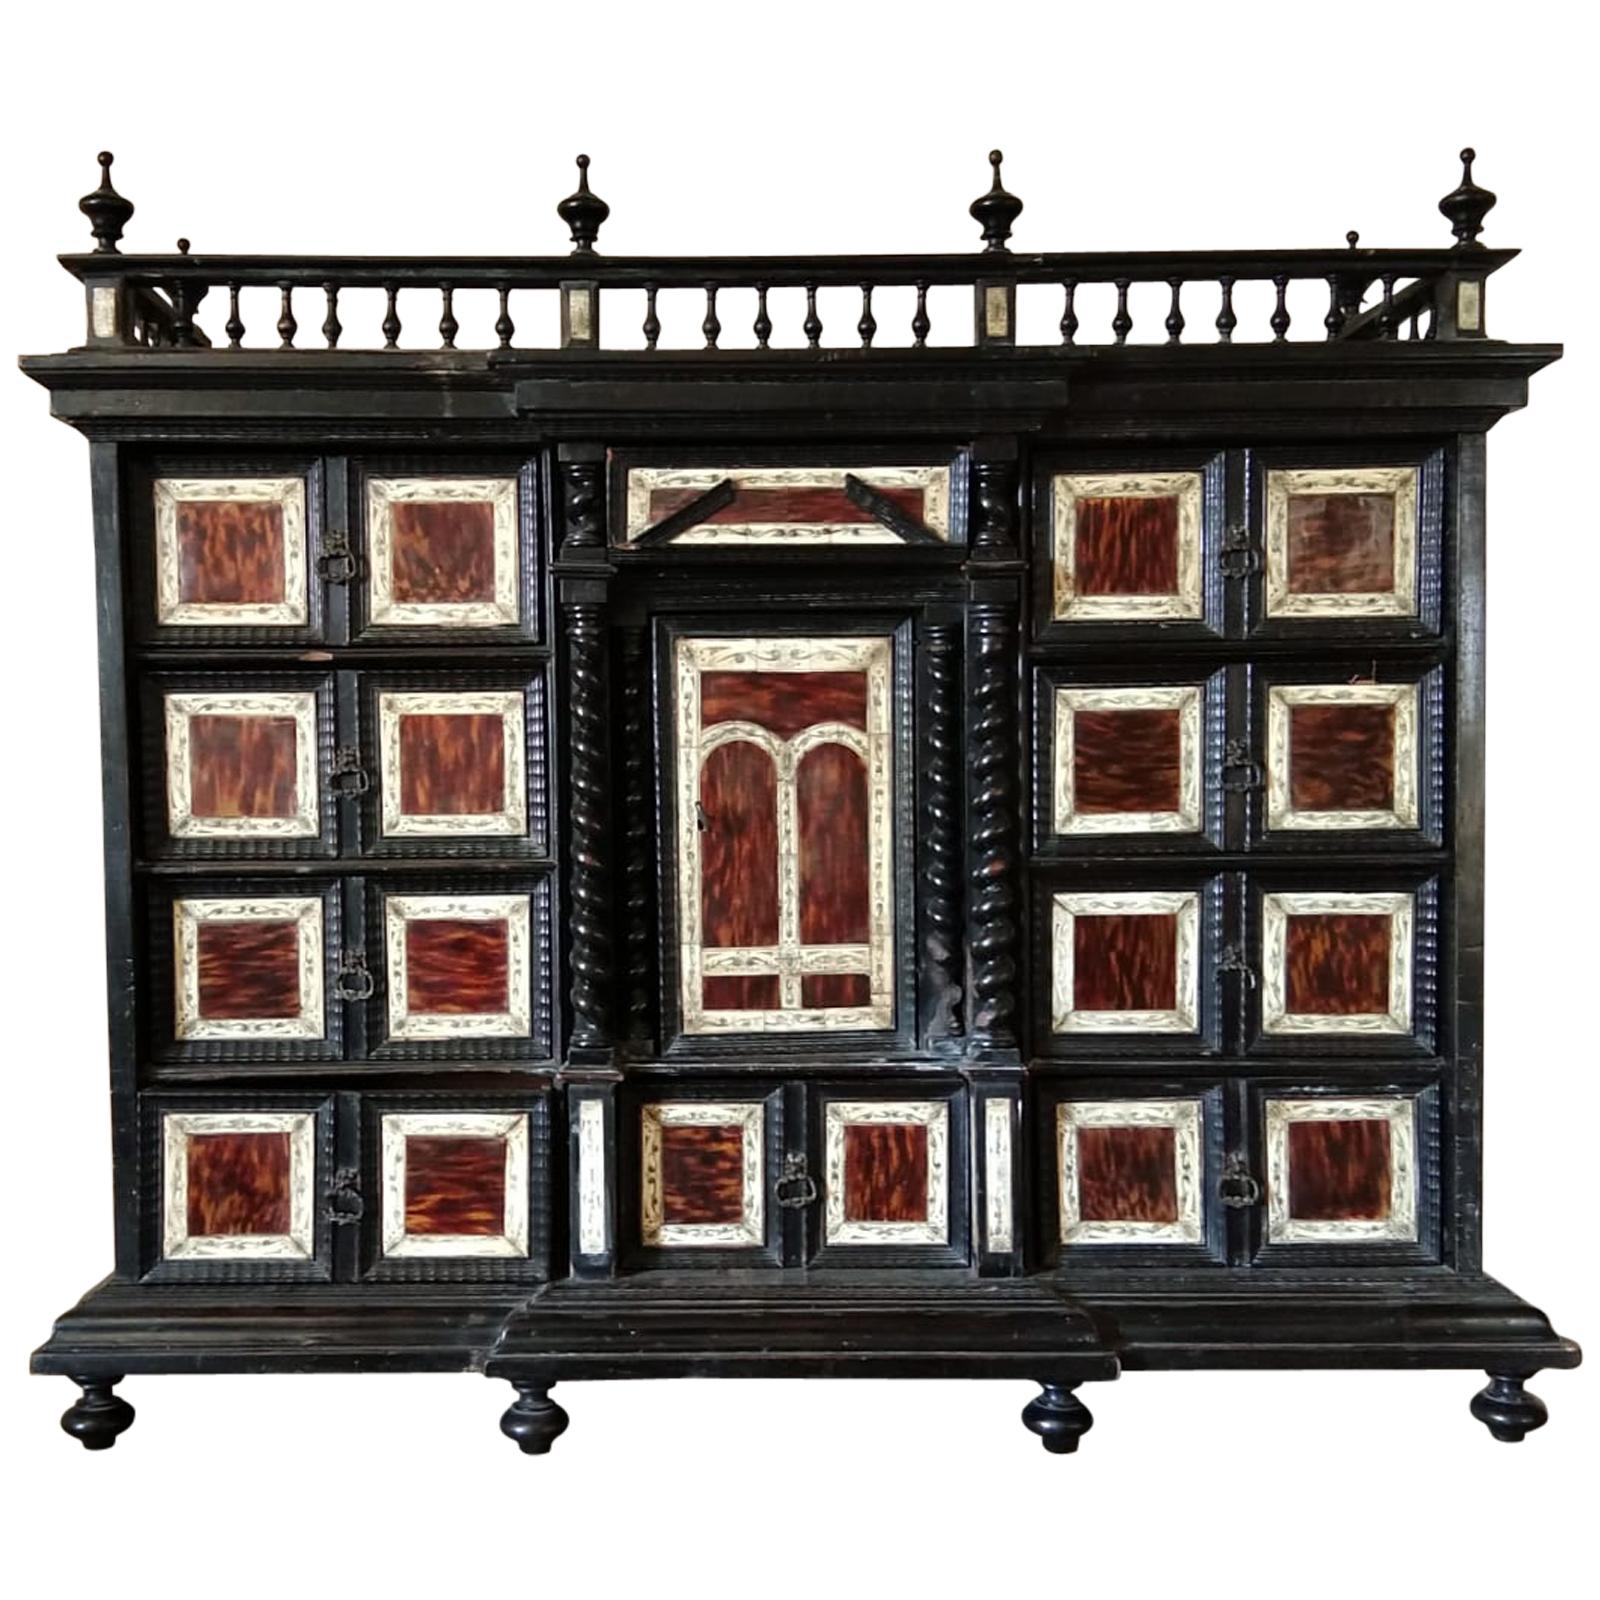 Spanish Tortoiseshell Cabinet, 17th Century